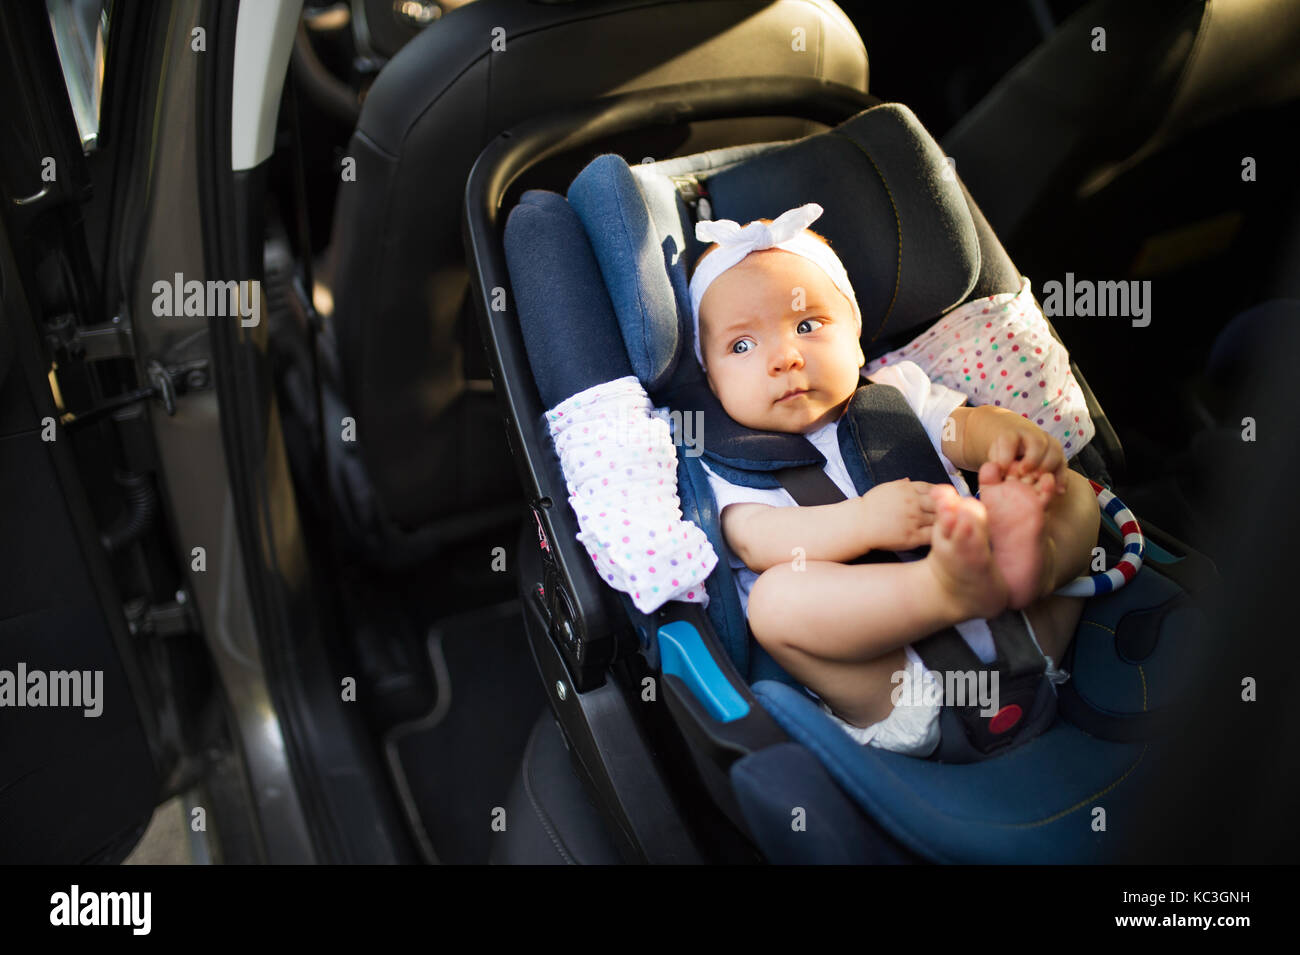 Kleines Baby mit Sicherheit Riemen in Sicherheit Auto Sitz befestigt. Stockfoto